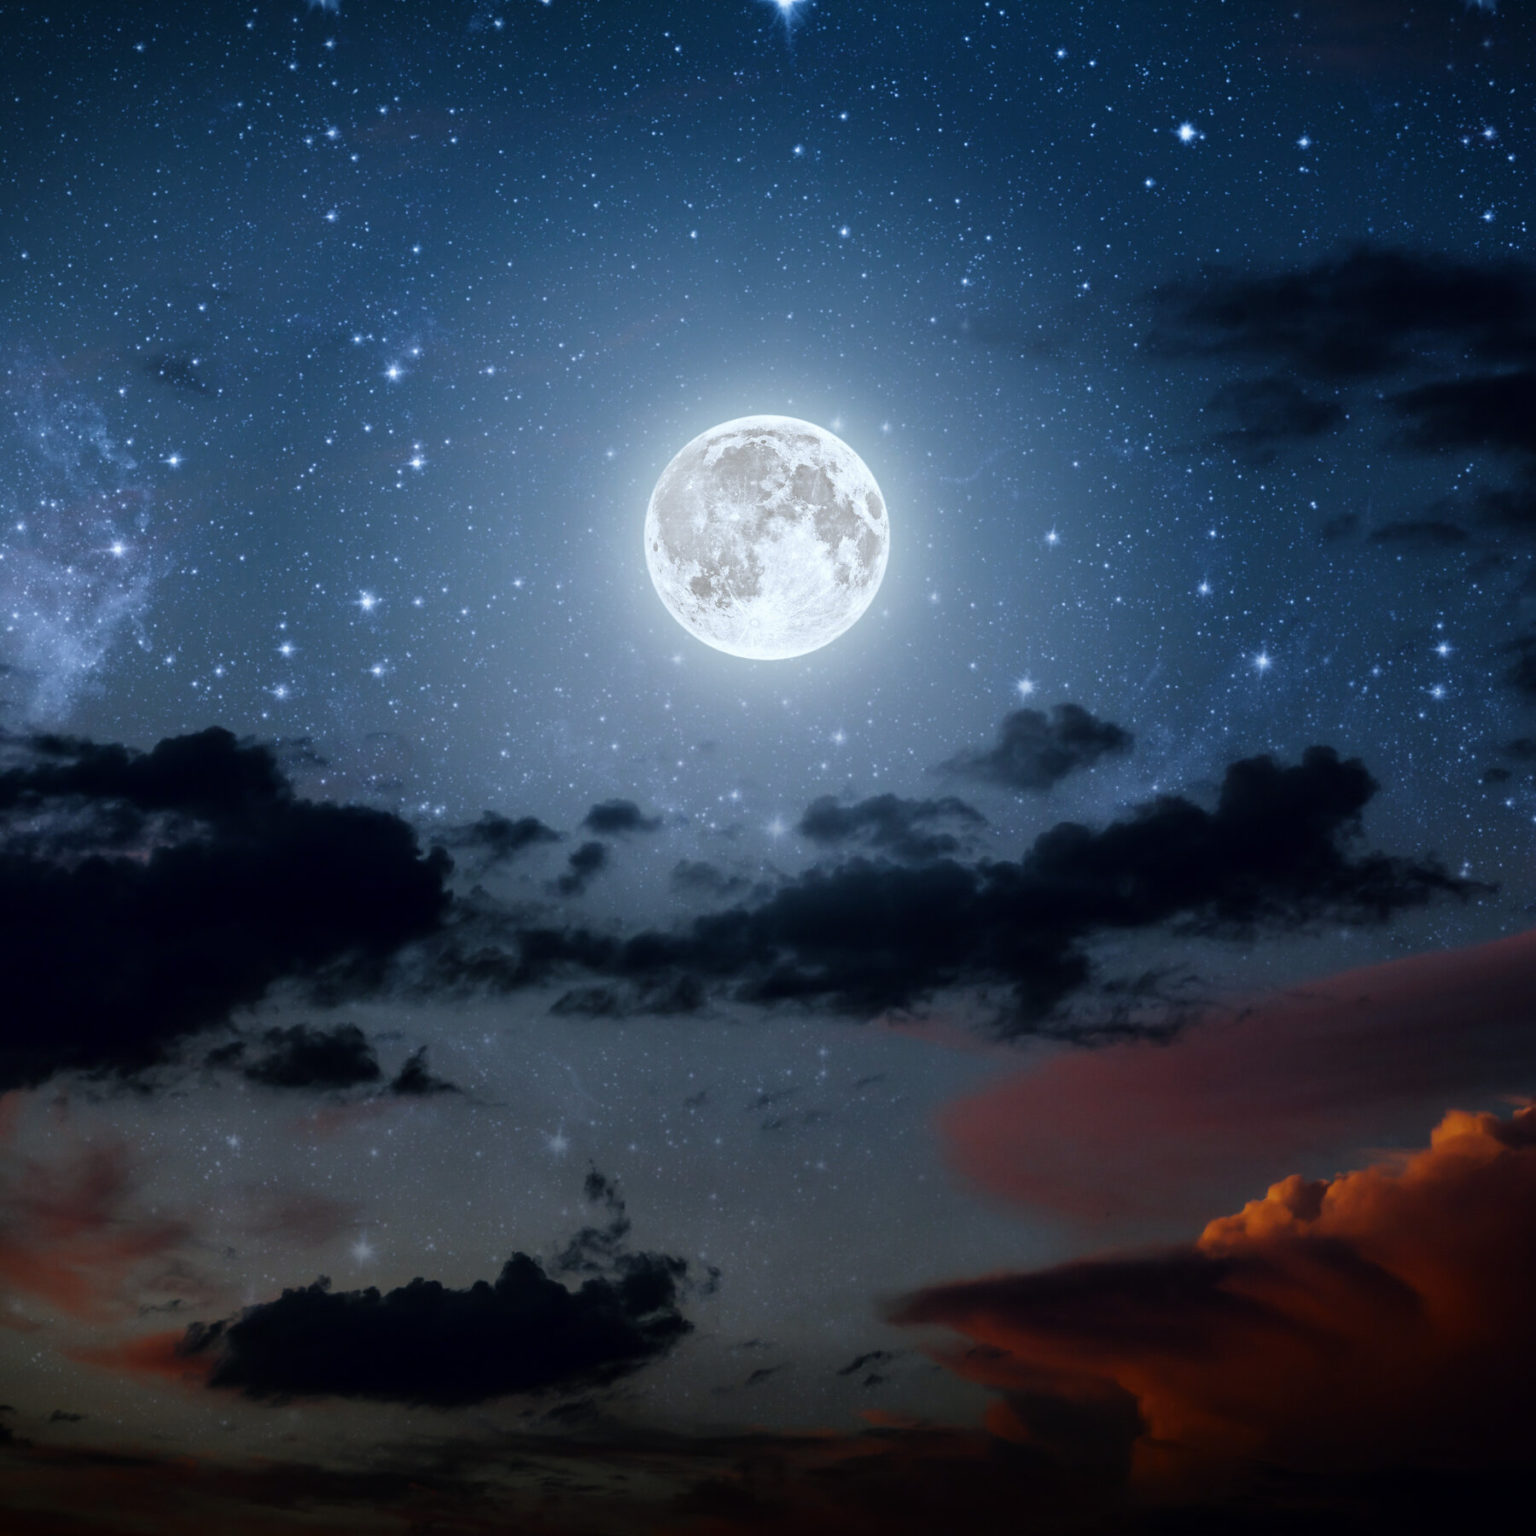 красивое фото ночного неба с луной